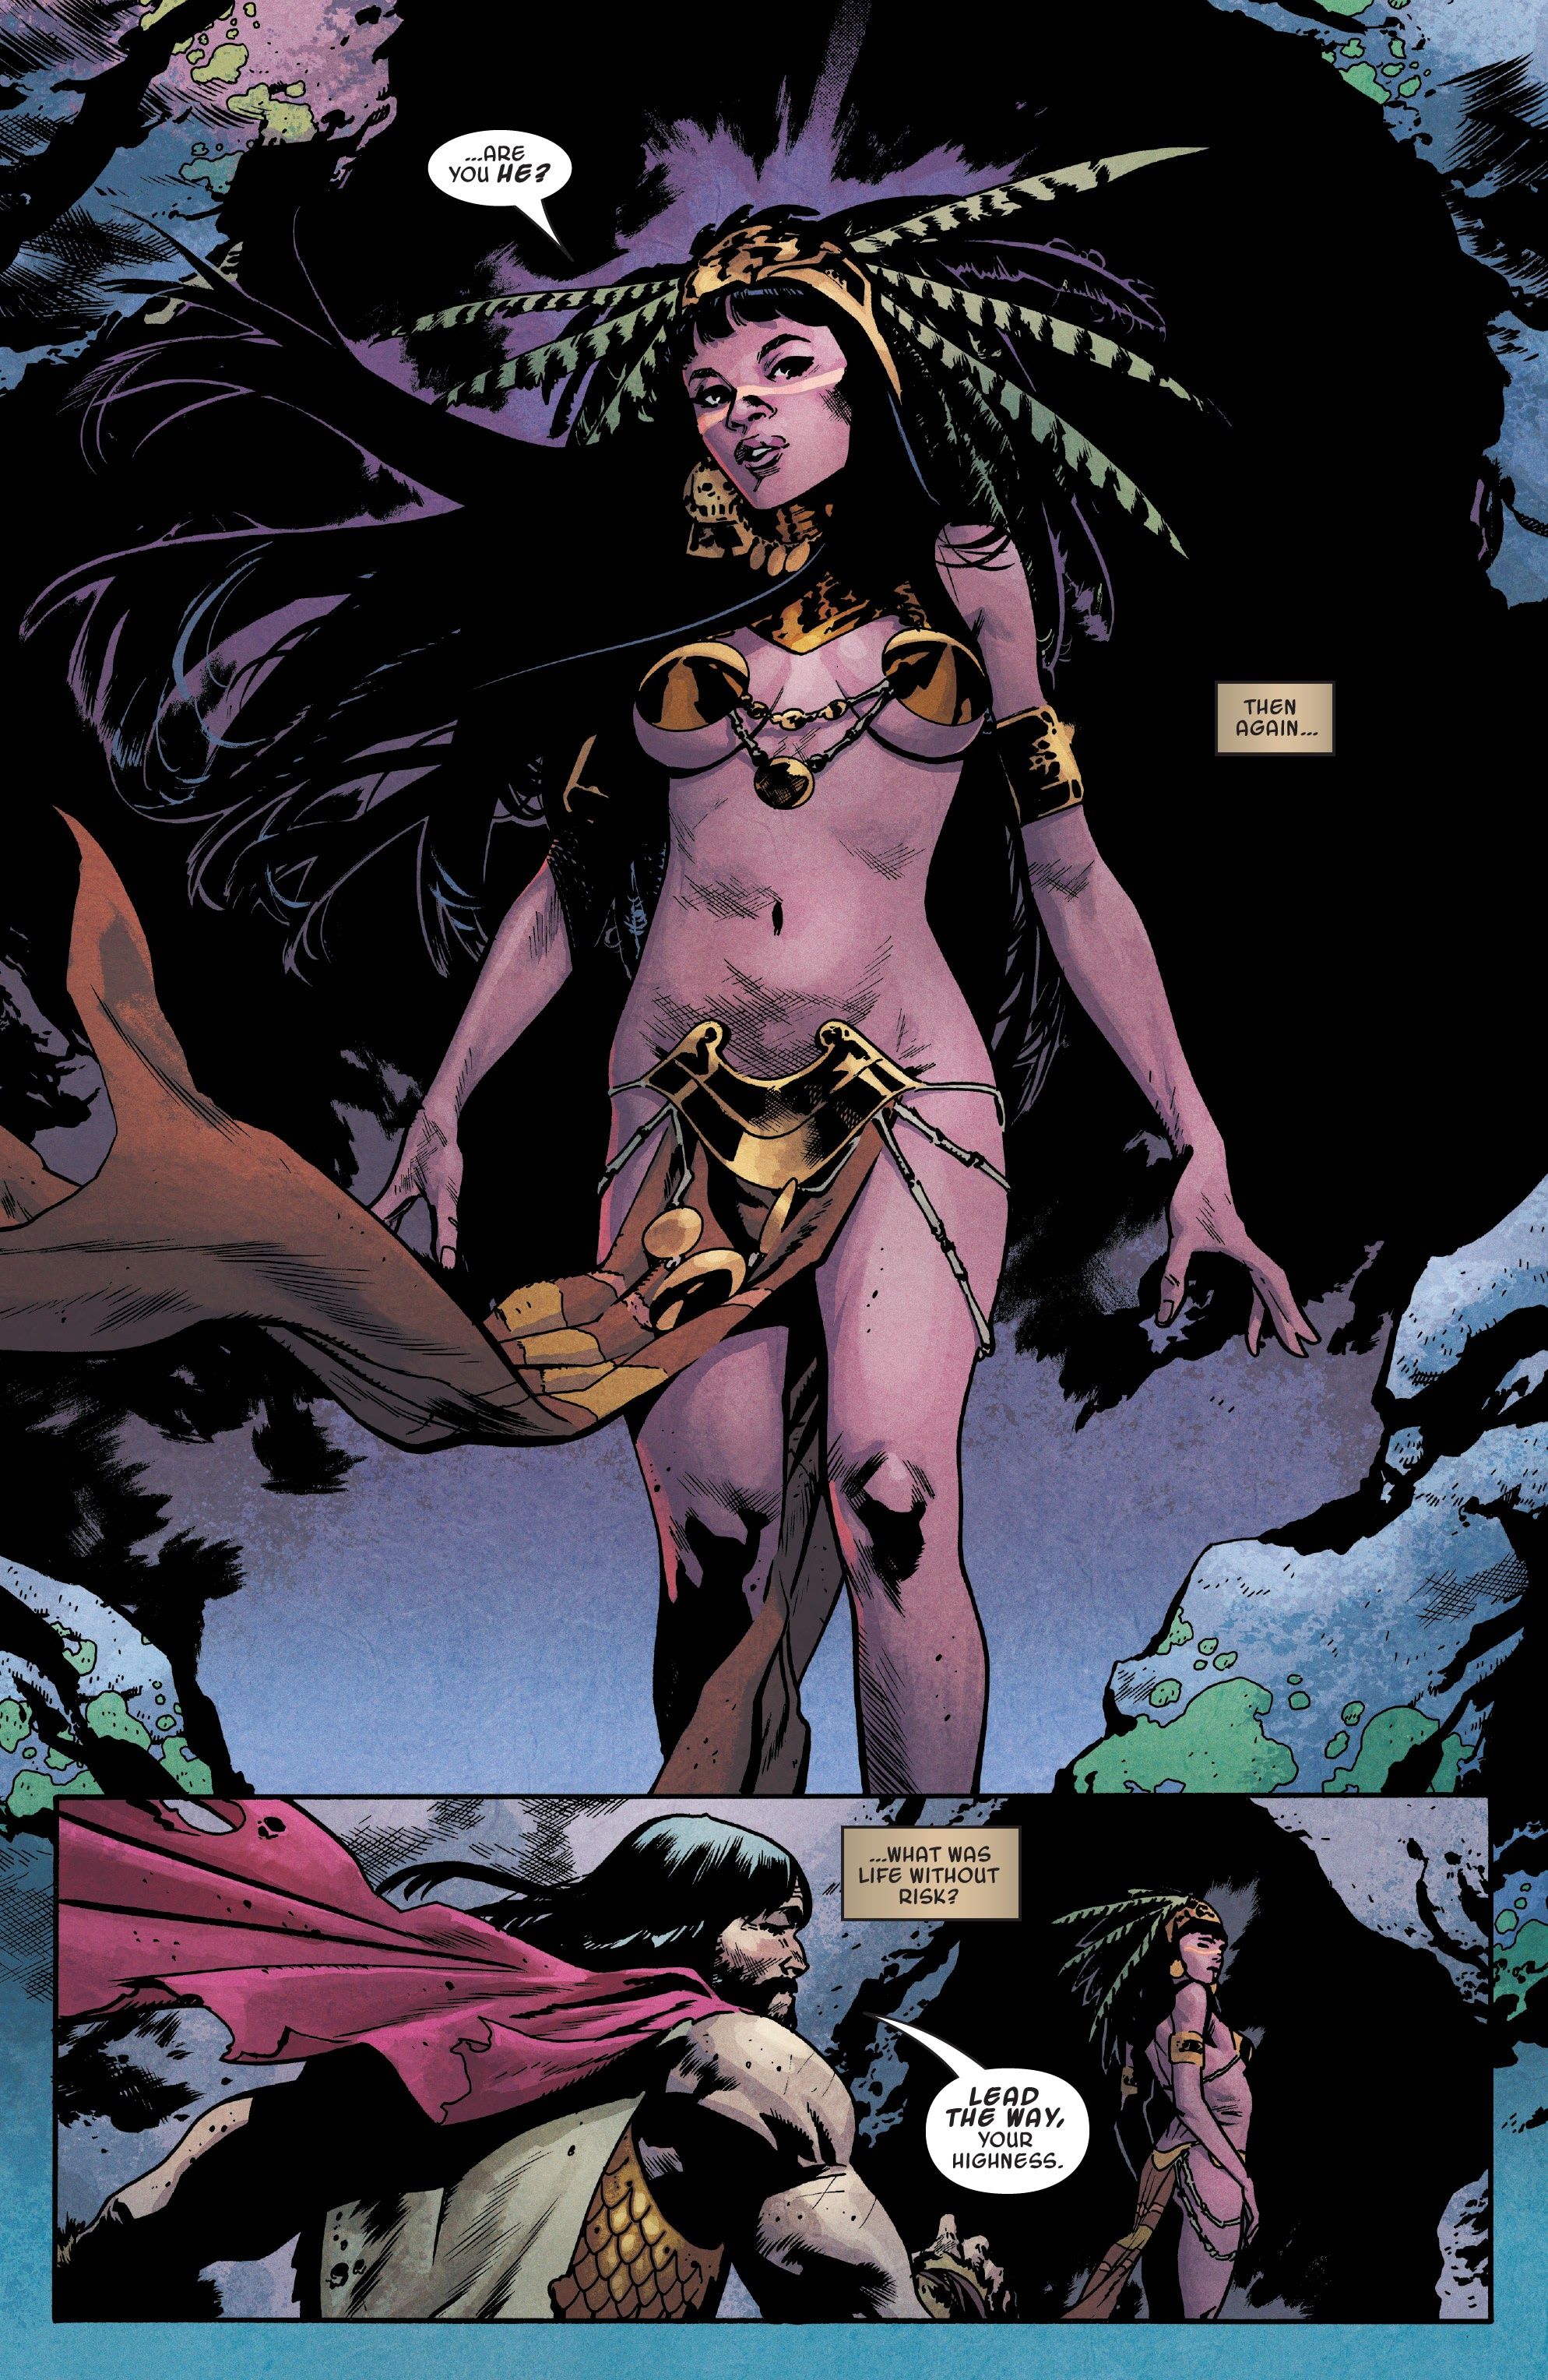 Princess Matoaka, from King Conan #3